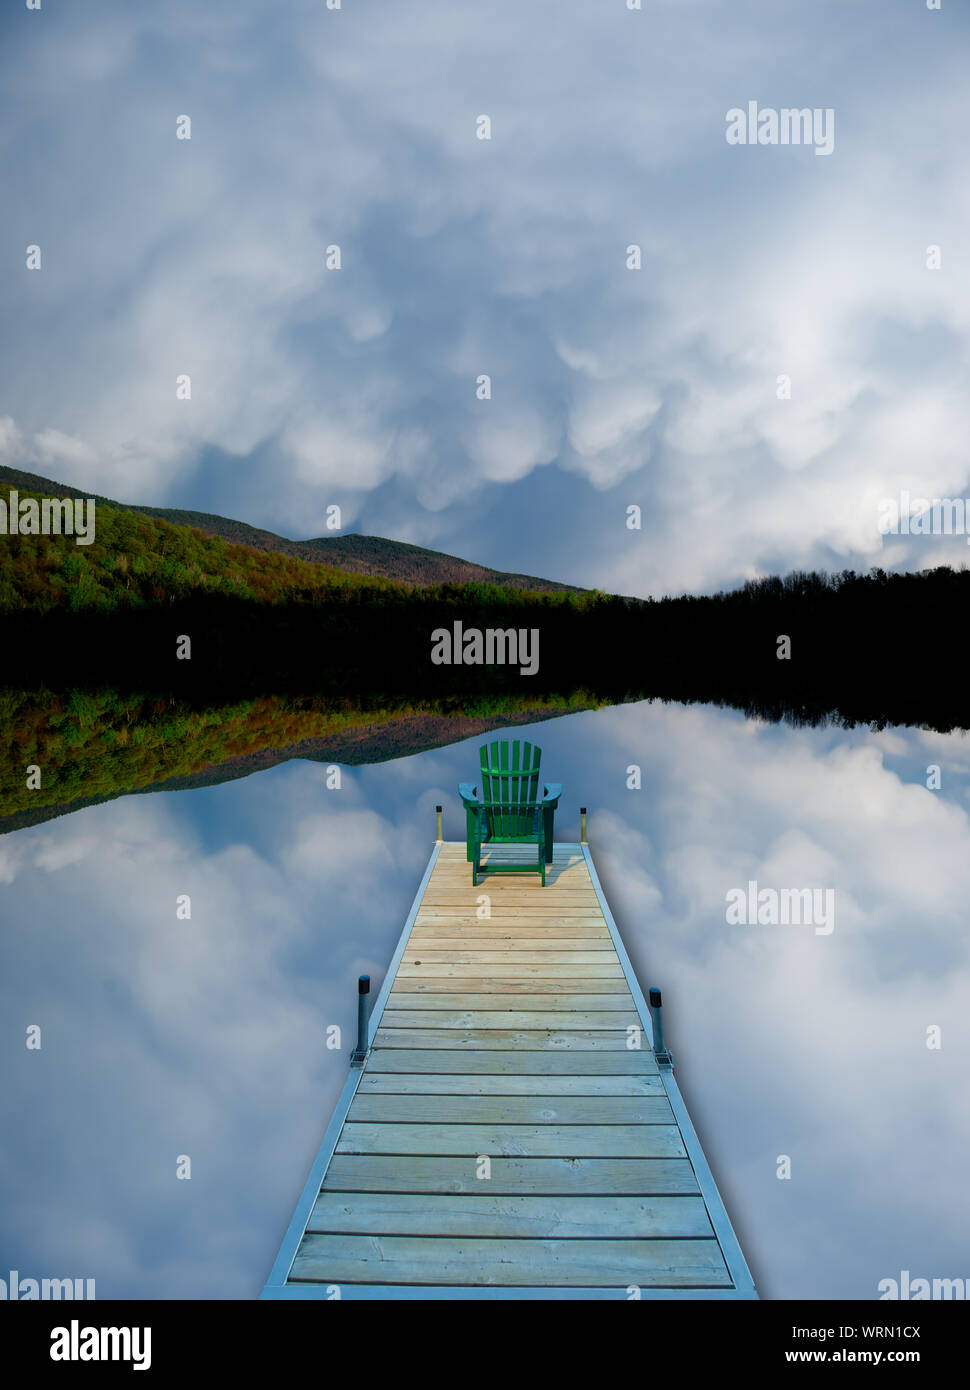 Image manipulée numériquement d'une chaise adirondack assis sur le bout d'un quai dans un nuage reflété lake. Banque D'Images